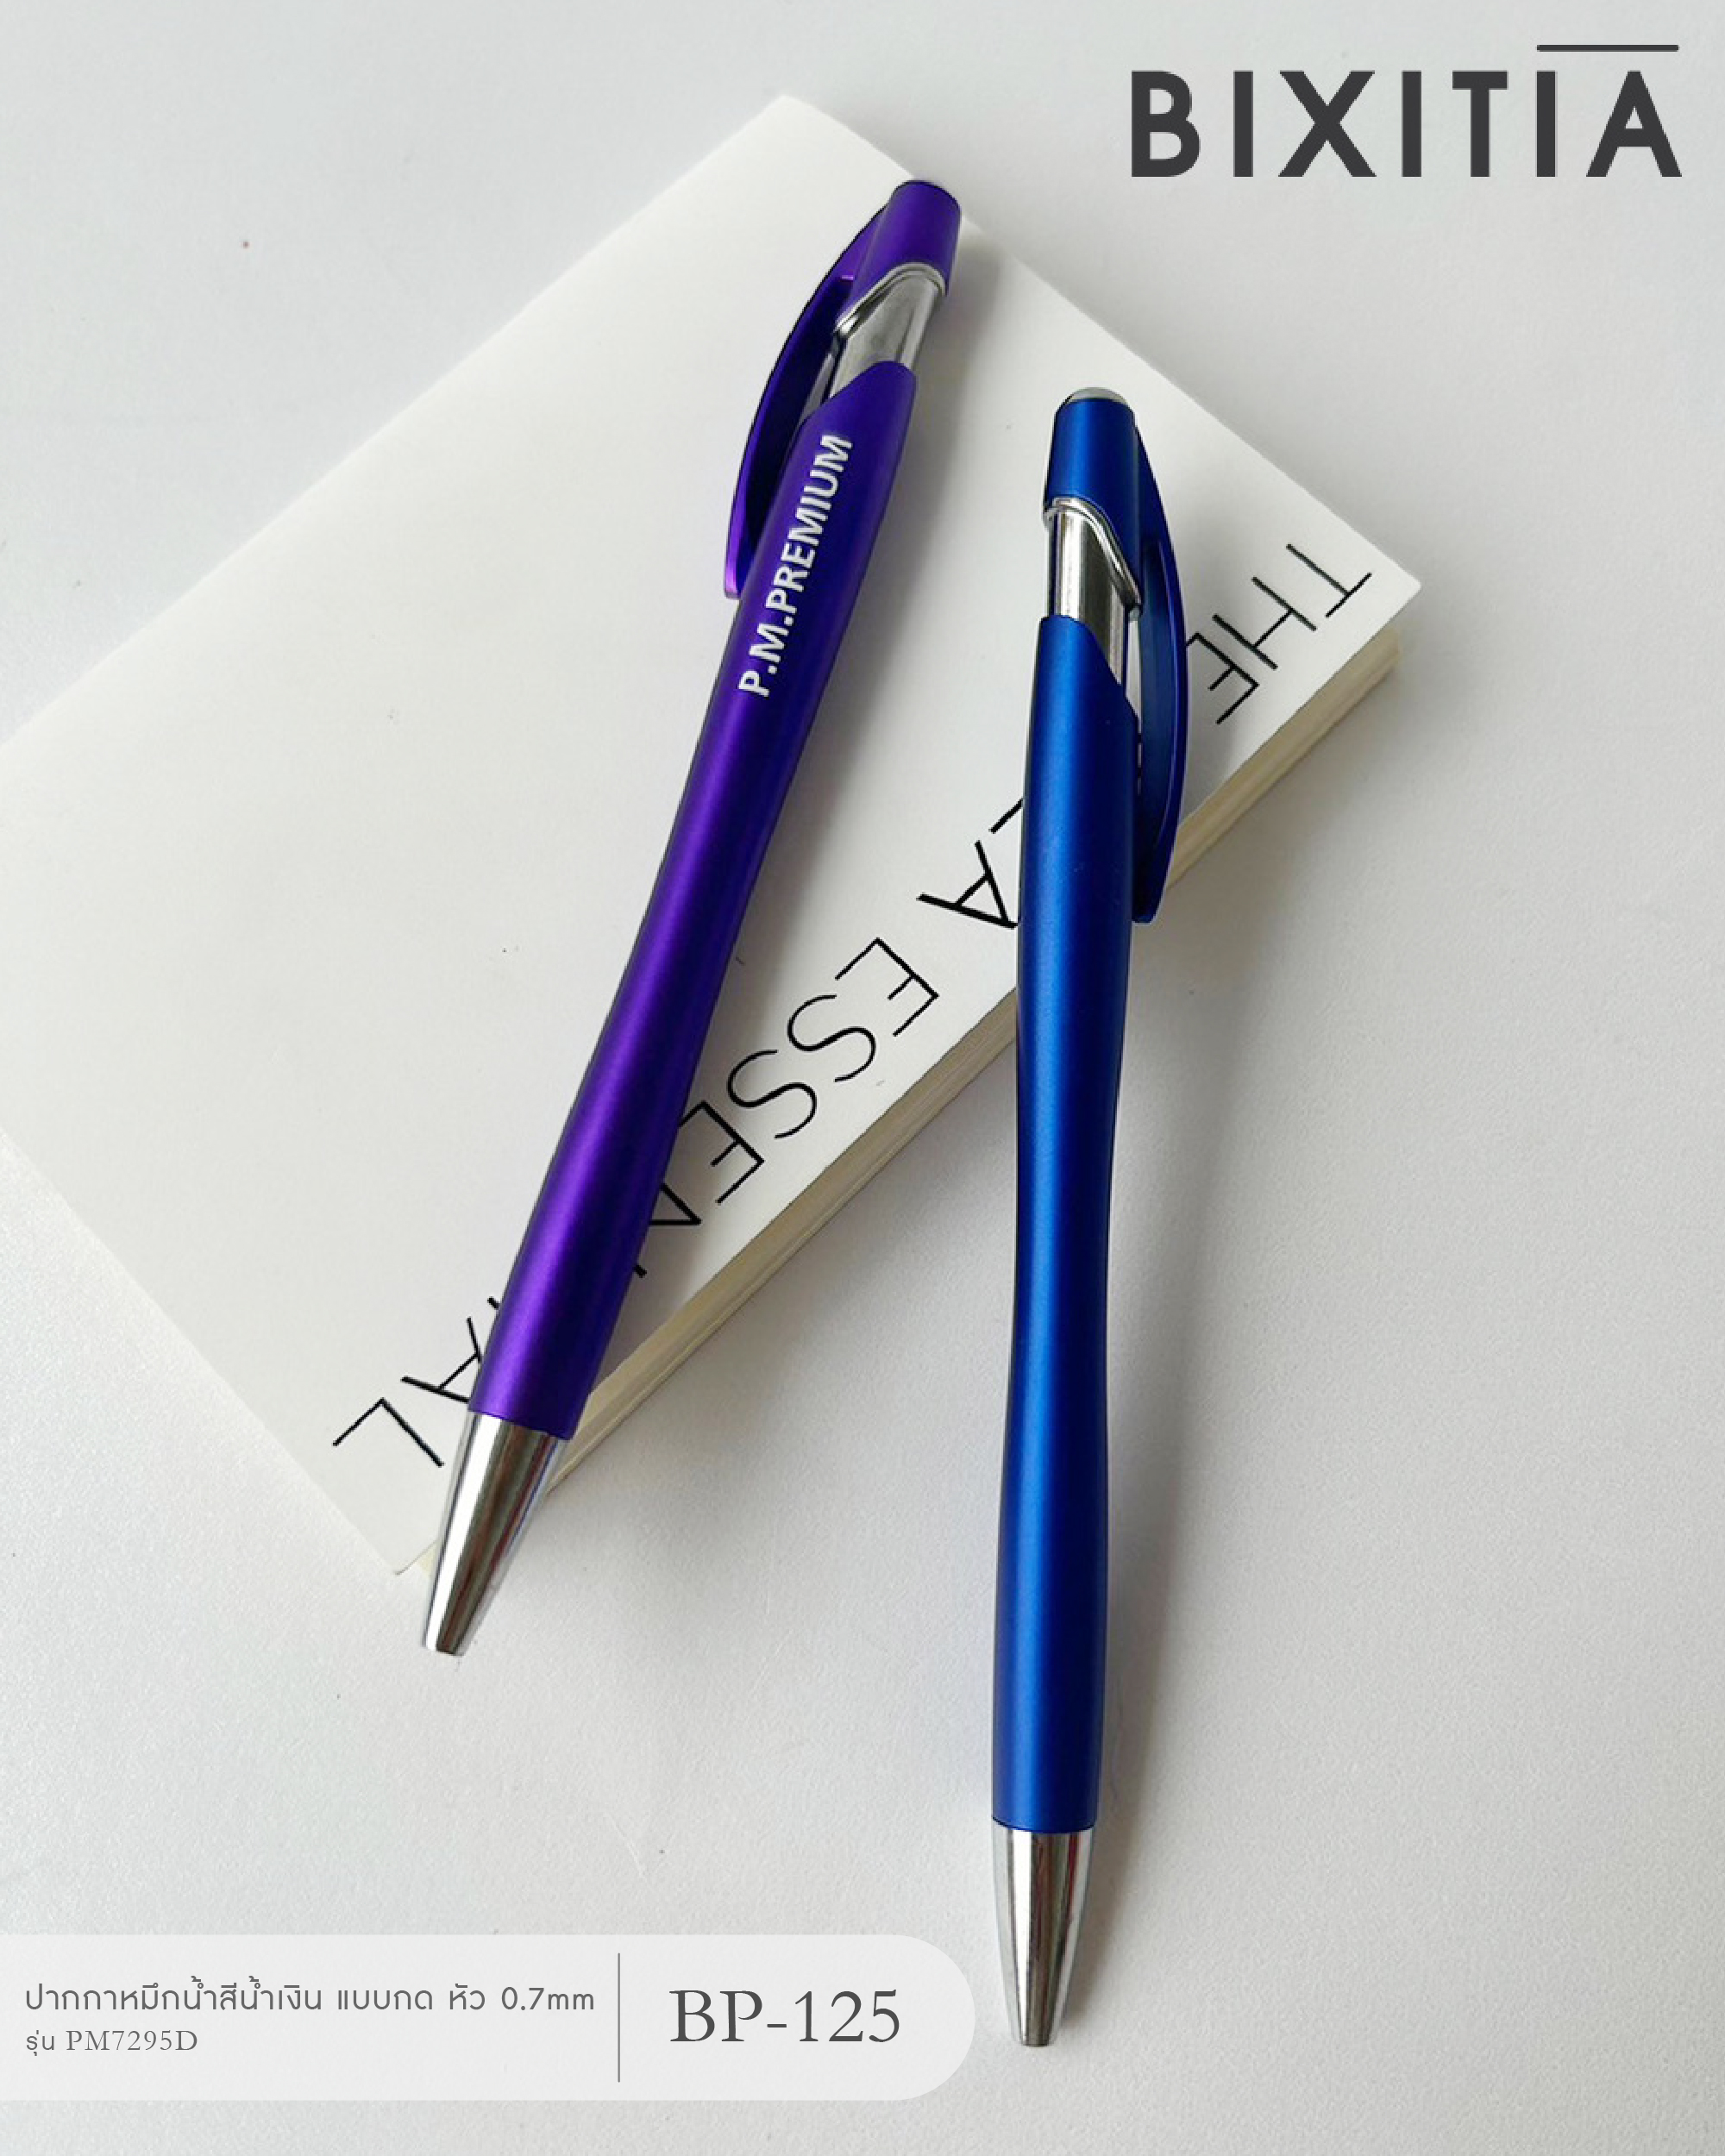 ปากกาหมึกน้ำสีน้ำเงิน แบบกด หัว 0.7mm รุ่น PM7295D BP-125